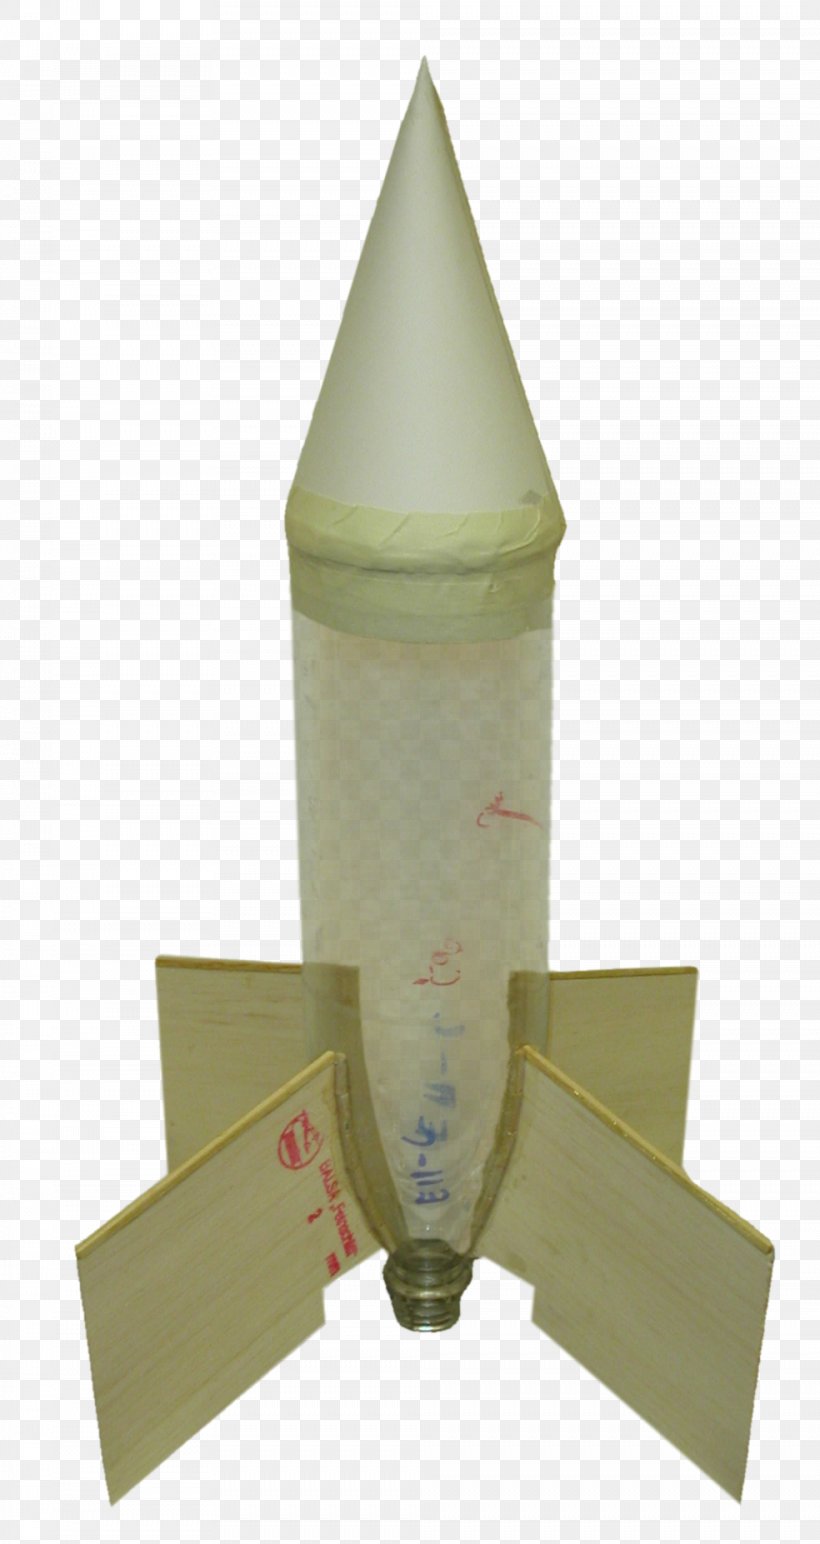 Water Rocket Bottle Rocket, PNG, 984x1853px, Water Rocket, Bottle, Bottle Rocket, Congreve Rocket, Fin Download Free